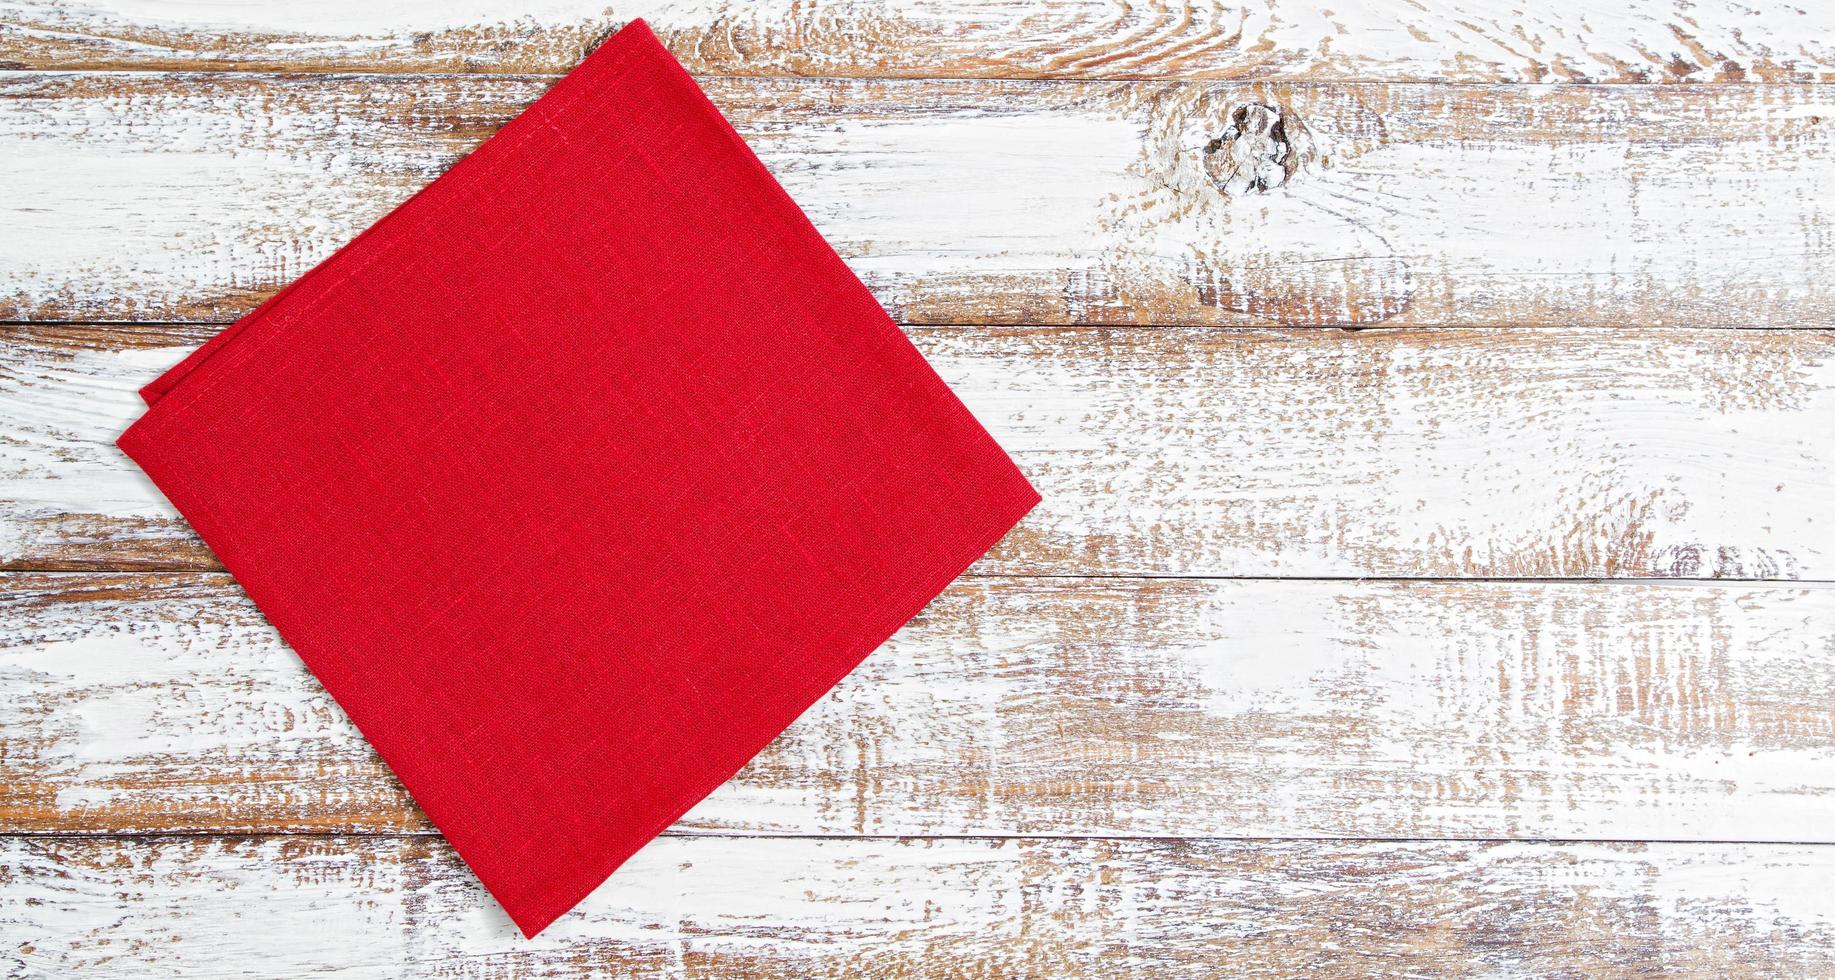 röd servett på träbord - ovanifrån, kopiera utrymme foto